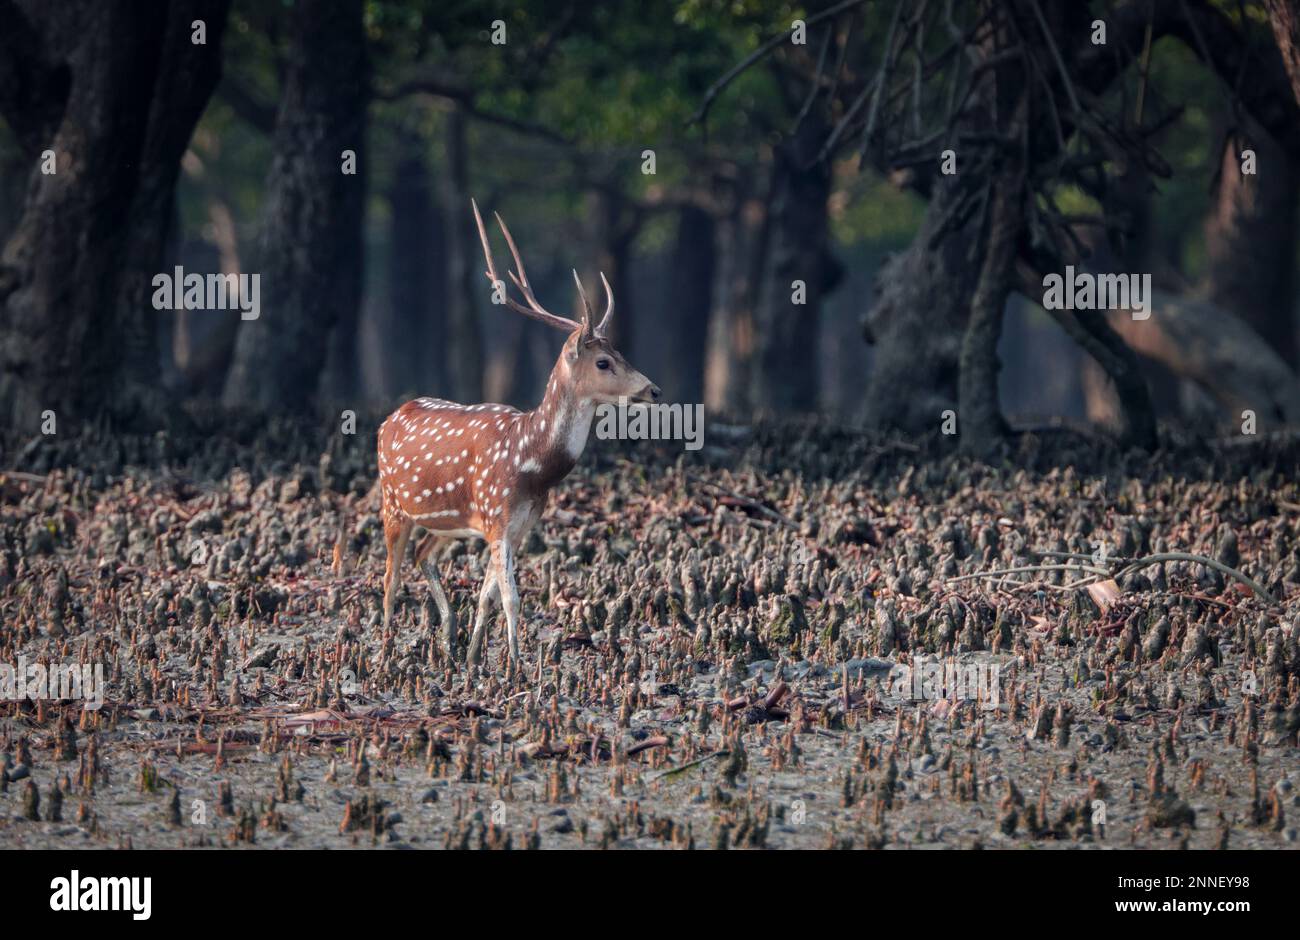 Wildes Hirsch, auch bekannt als geflecktes Hirsch und Achsenhirsch. Dieses Foto wurde von Sundarbans, Bangladesch, gemacht. Stockfoto